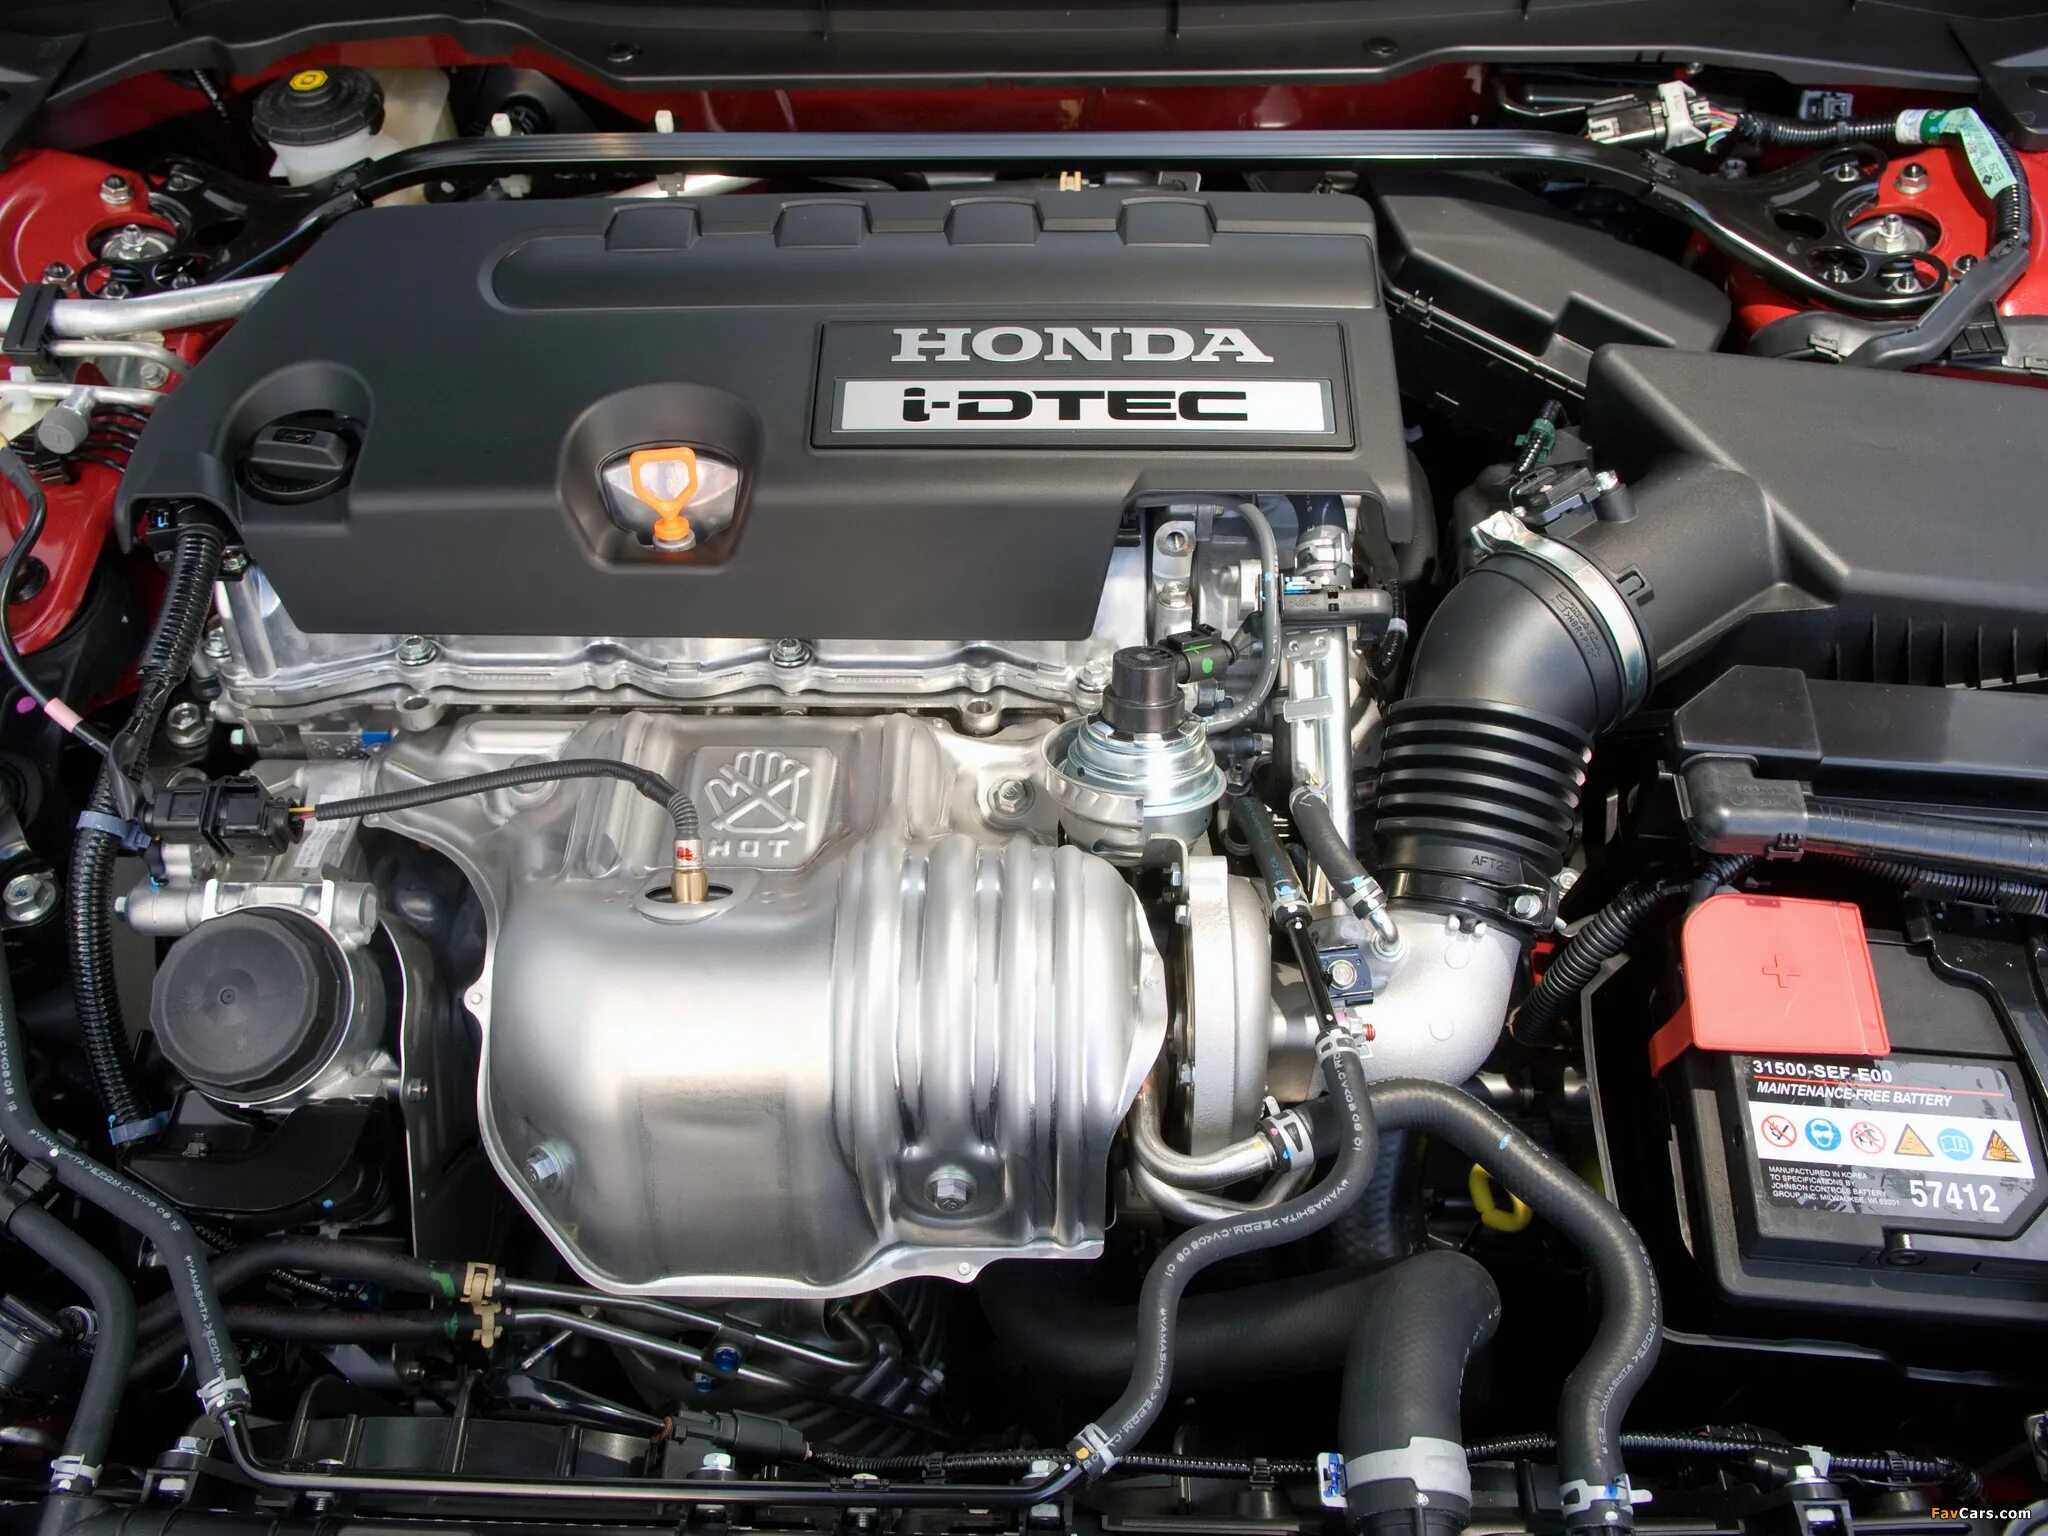 Cr v 10. Хонда дизель 2.2 i-DTEC. Honda CR V 2.2 dizel Motor. Honda Accord Diesel 2.2. Двигатель Хонда Цивик 2.4.